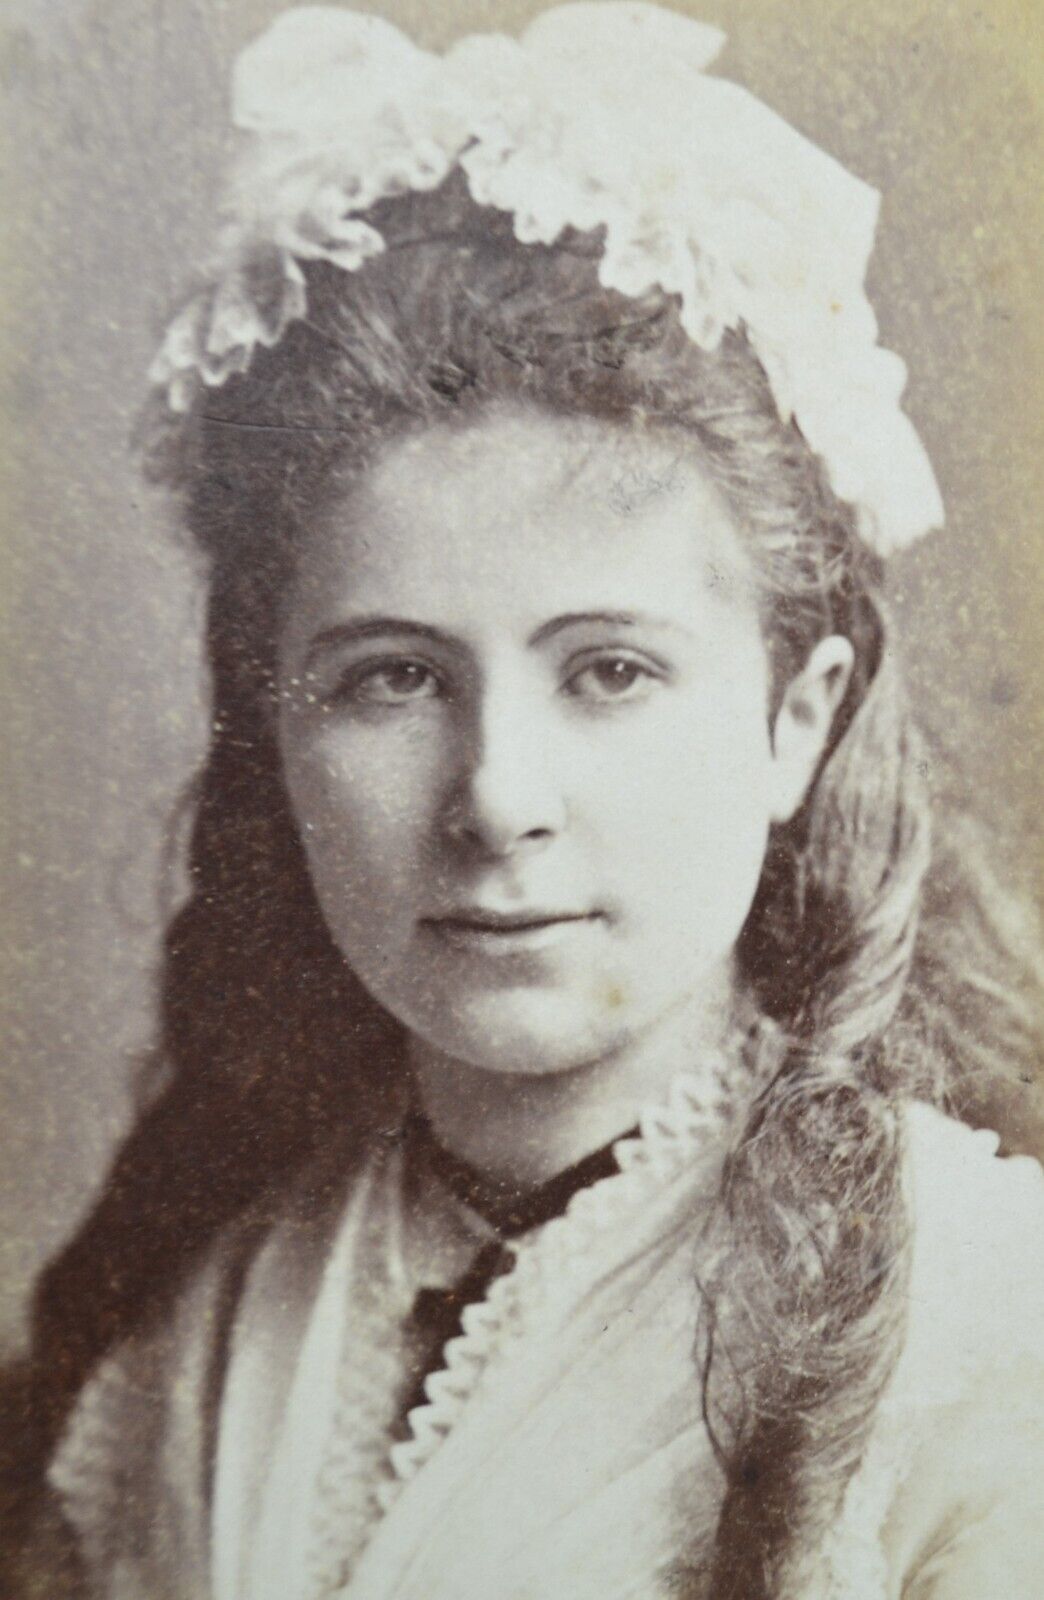 Actress Theatre Opera Singer? CDV 1860/70 Photo Loescher & Petsch Berlin